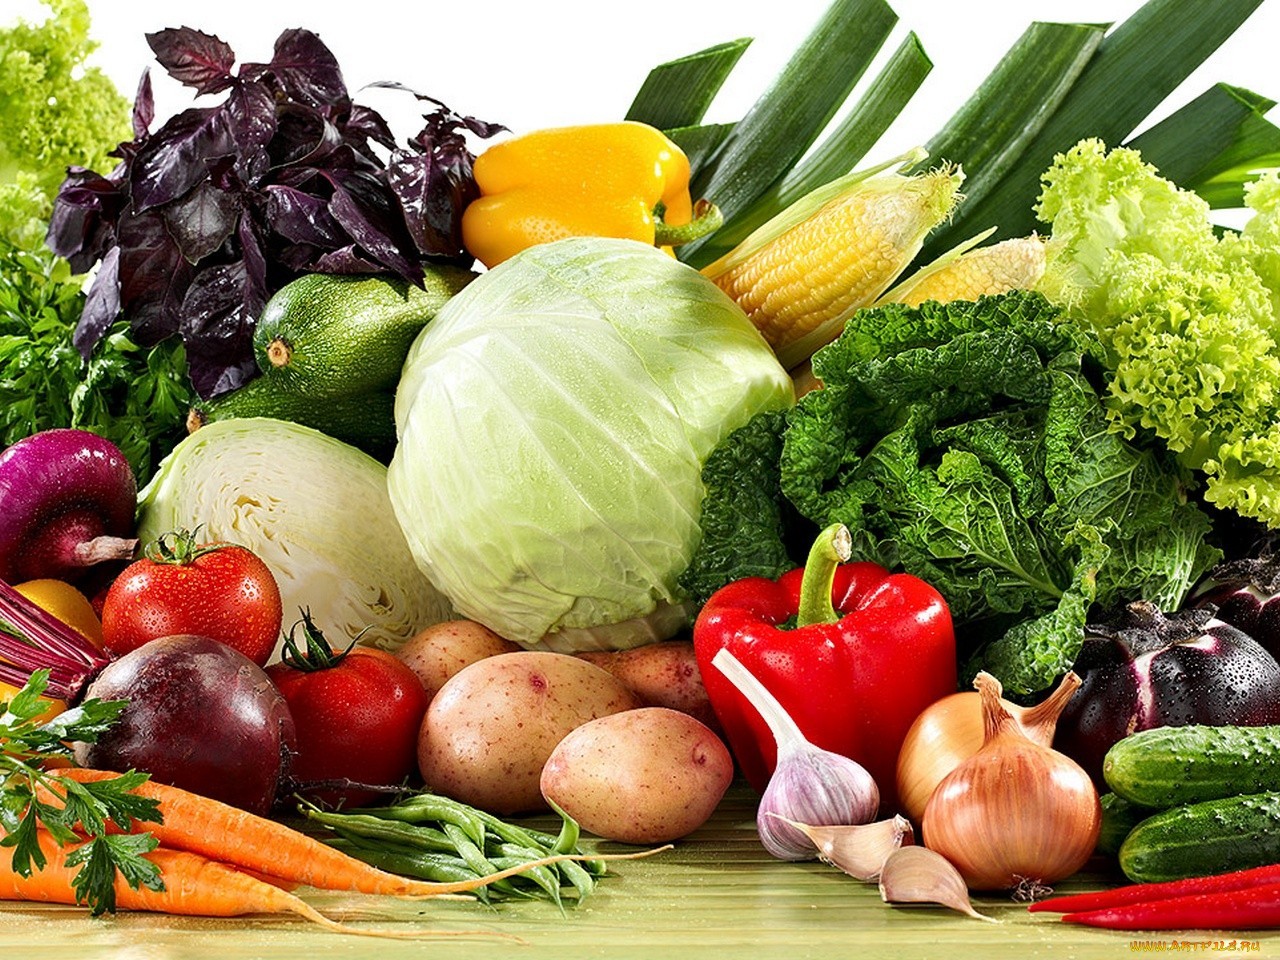 Світлана Фус: Щоб добре себе почувати, необхідно щодня вживати близько 500 г овочів